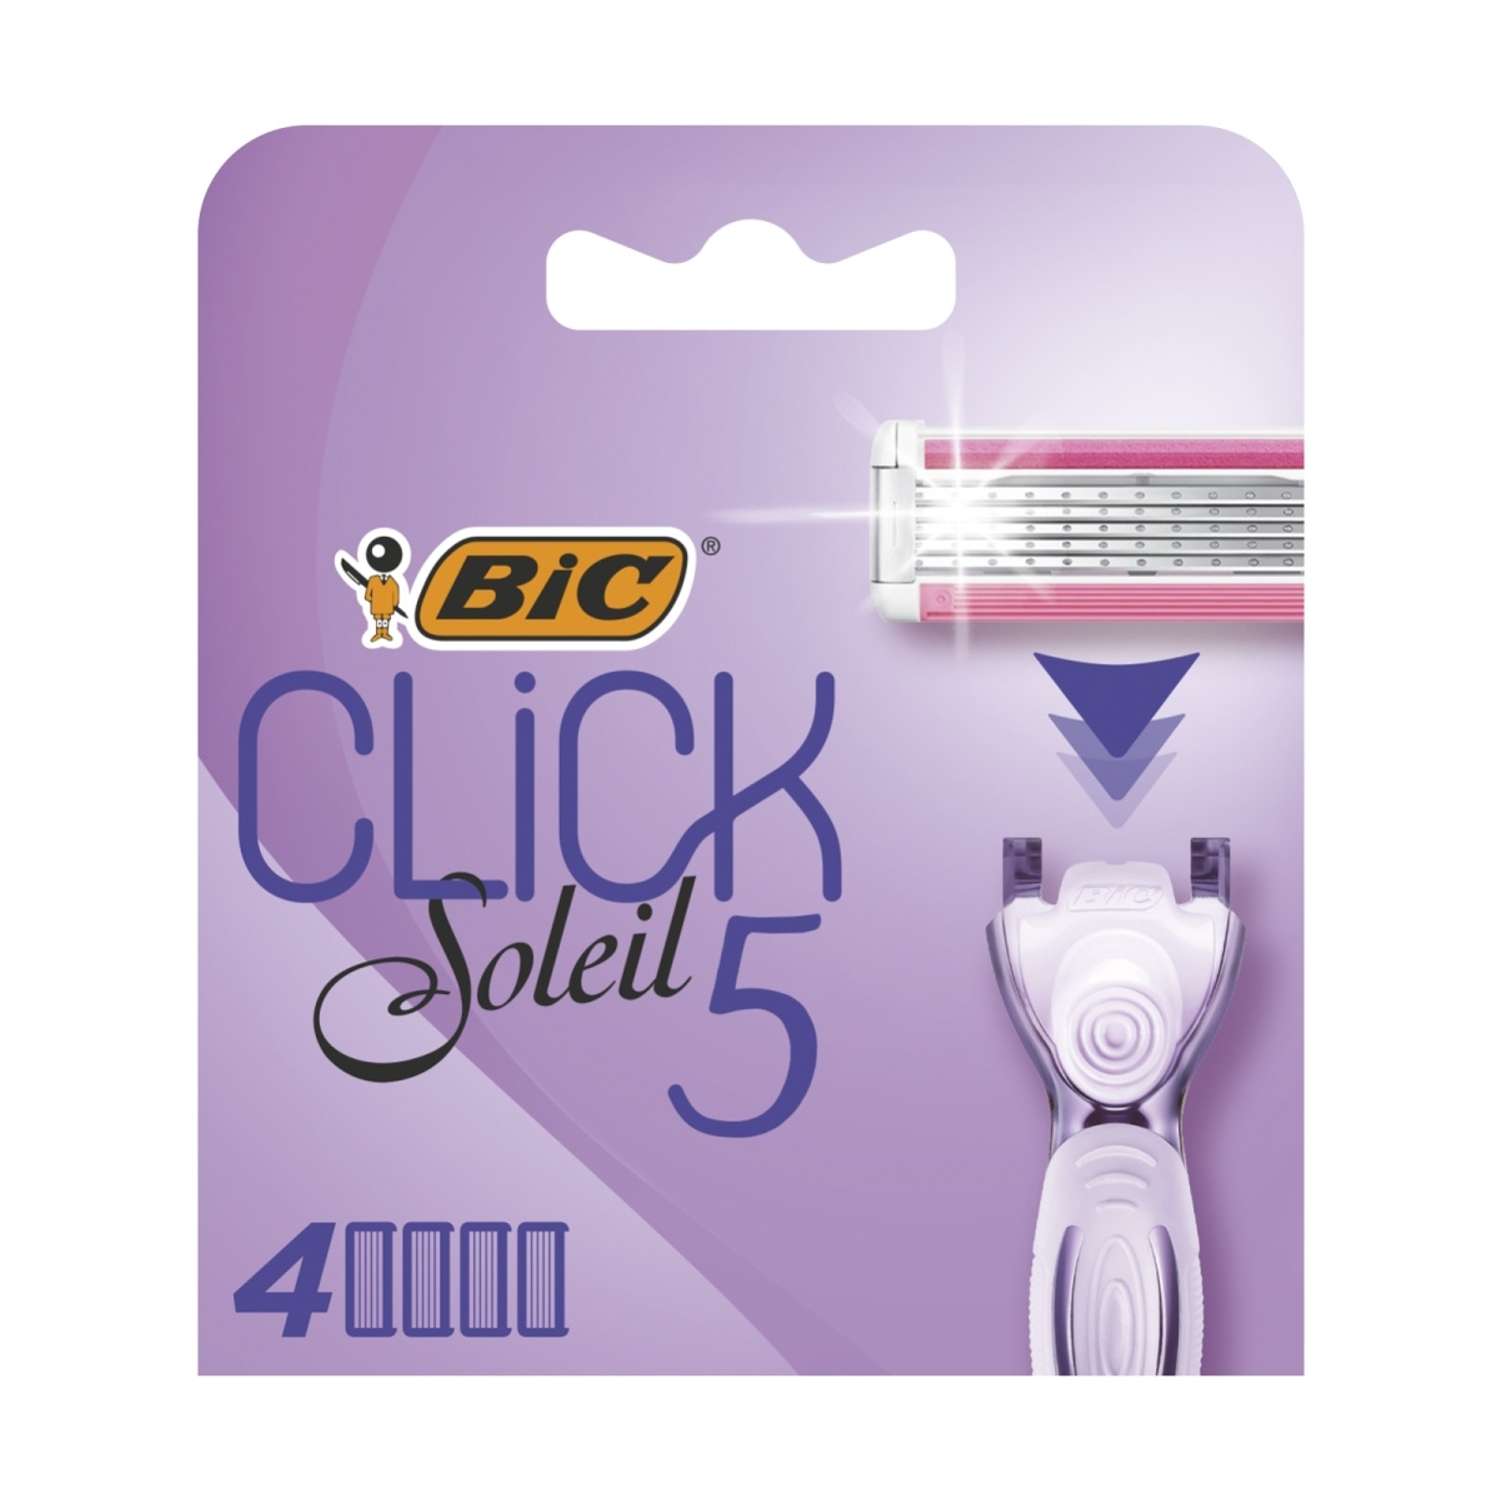 Сменные кассеты для бритвы BIC Click 5 Soleil 4 шт - фото 1